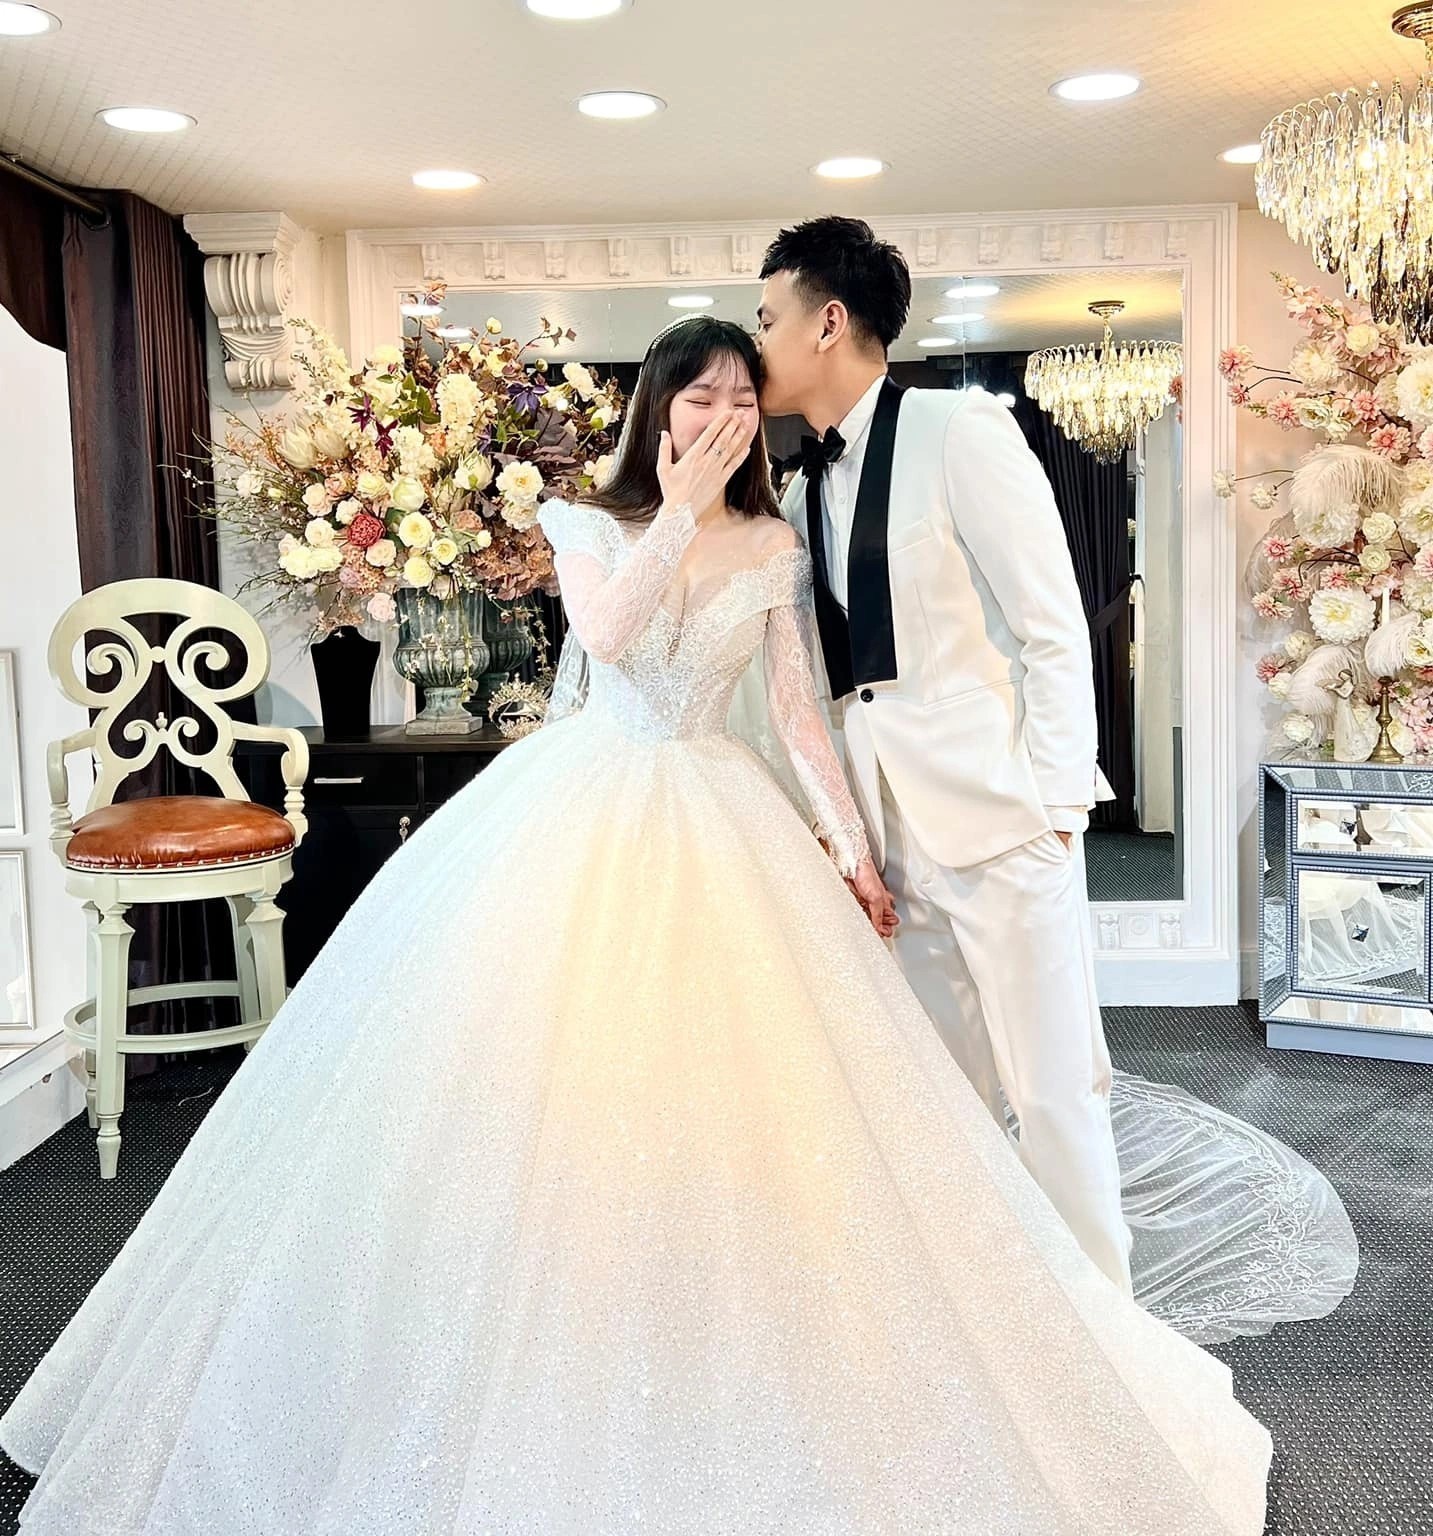 Đám cưới là một trong những ngày đẹp nhất trong cuộc đời mỗi người, vậy tại sao bạn không xem những khoảnh khắc lãng mạn và đáng nhớ trong hôn lễ của diễn viên Ngọc Thuận với hình ảnh tuyệt đẹp?